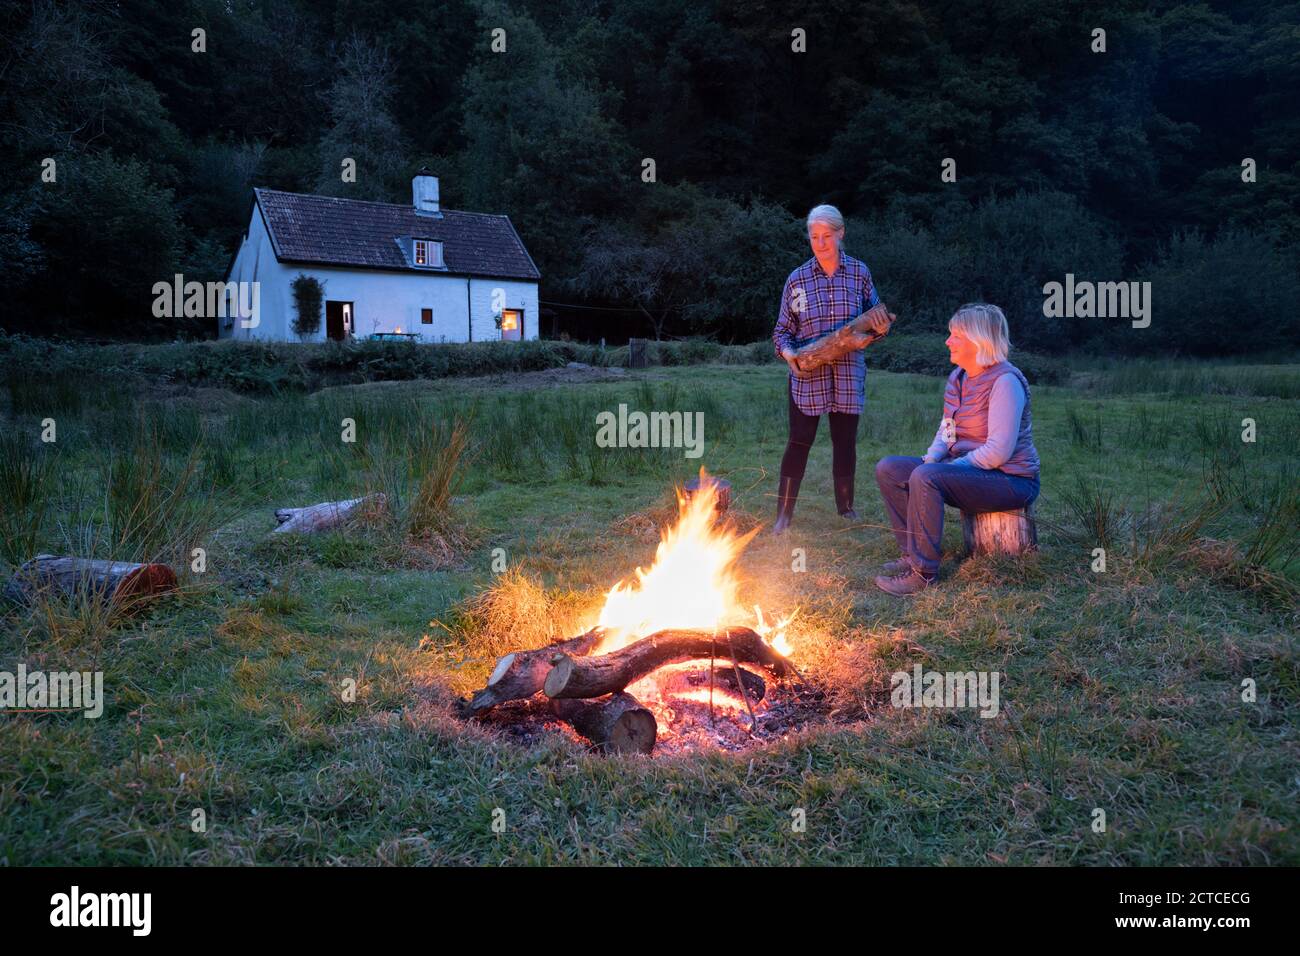 Deux femmes se sont rassemblées autour de feu de joie avec chalet en arrière-plan en automne, Exmoor, Somerset, Angleterre, Royaume-Uni, Europe Banque D'Images